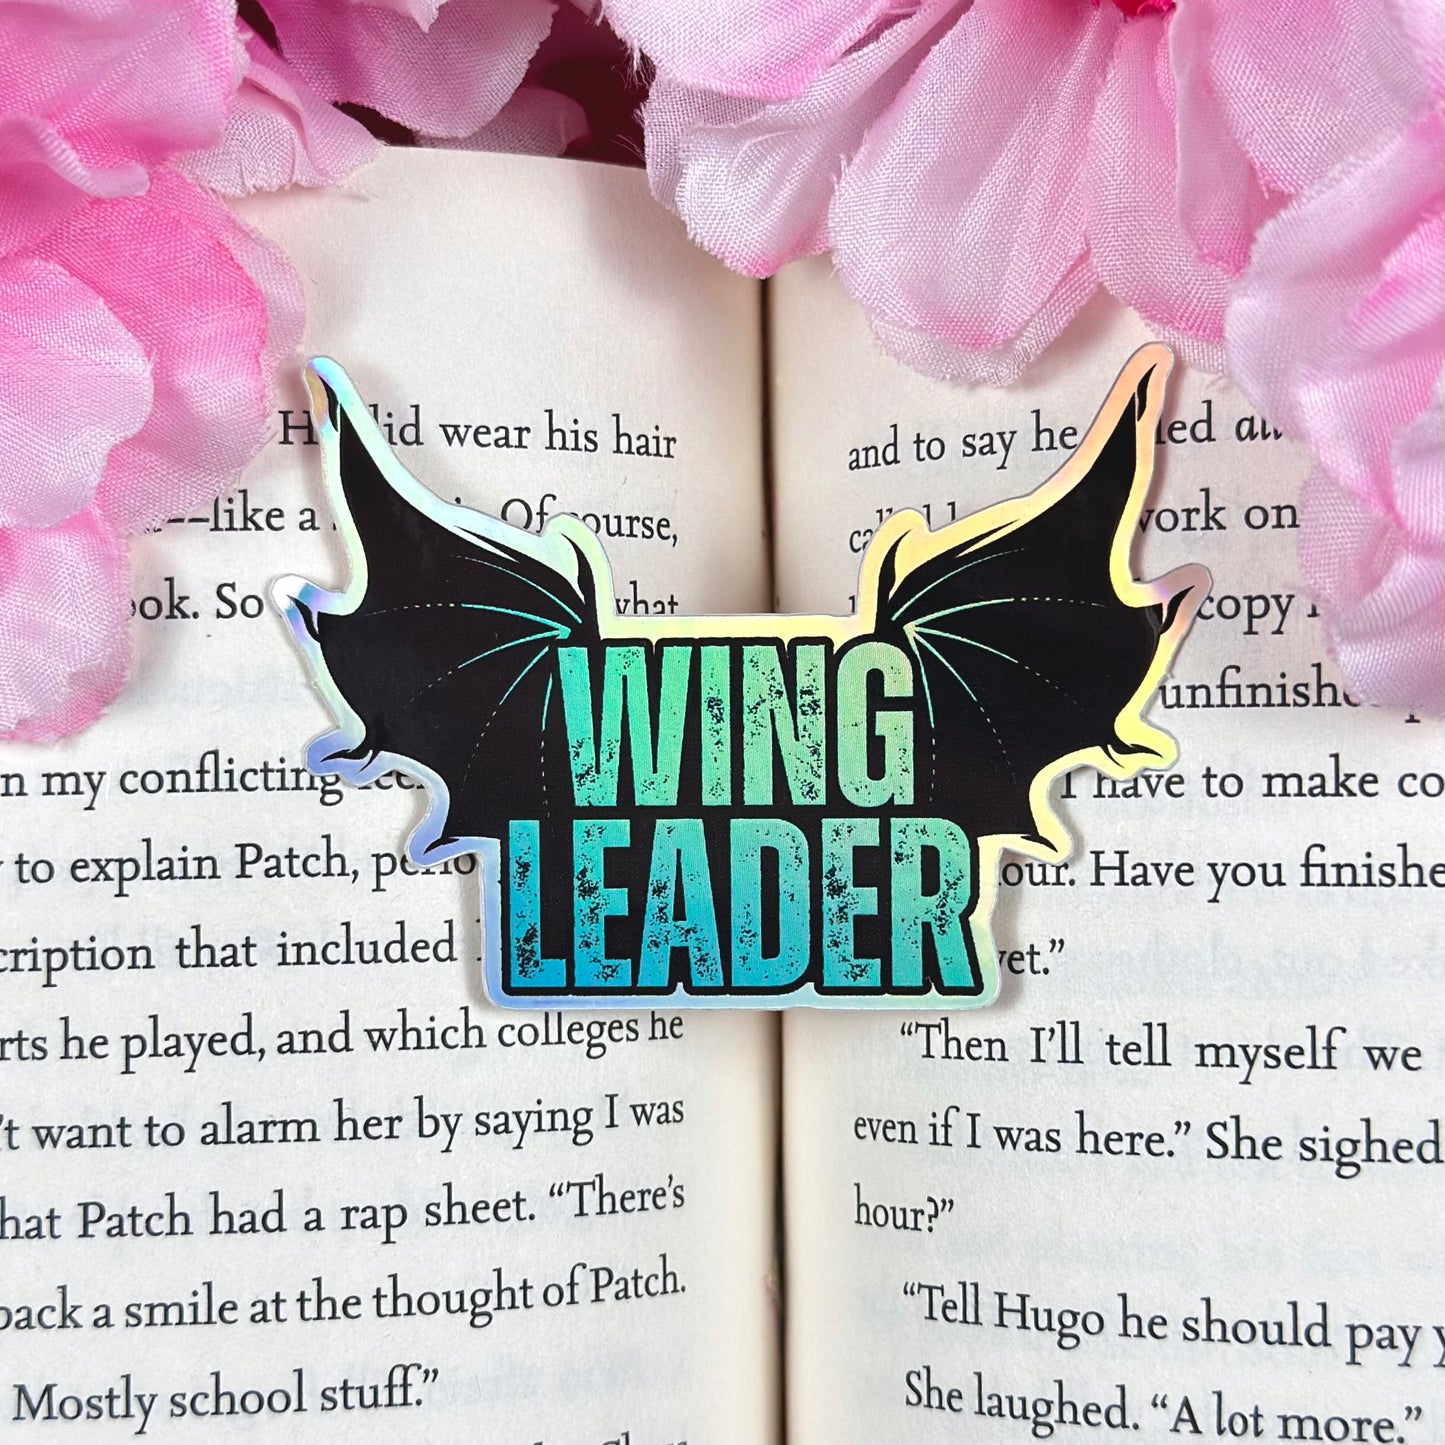 Wing Leader Vinyl Sticker